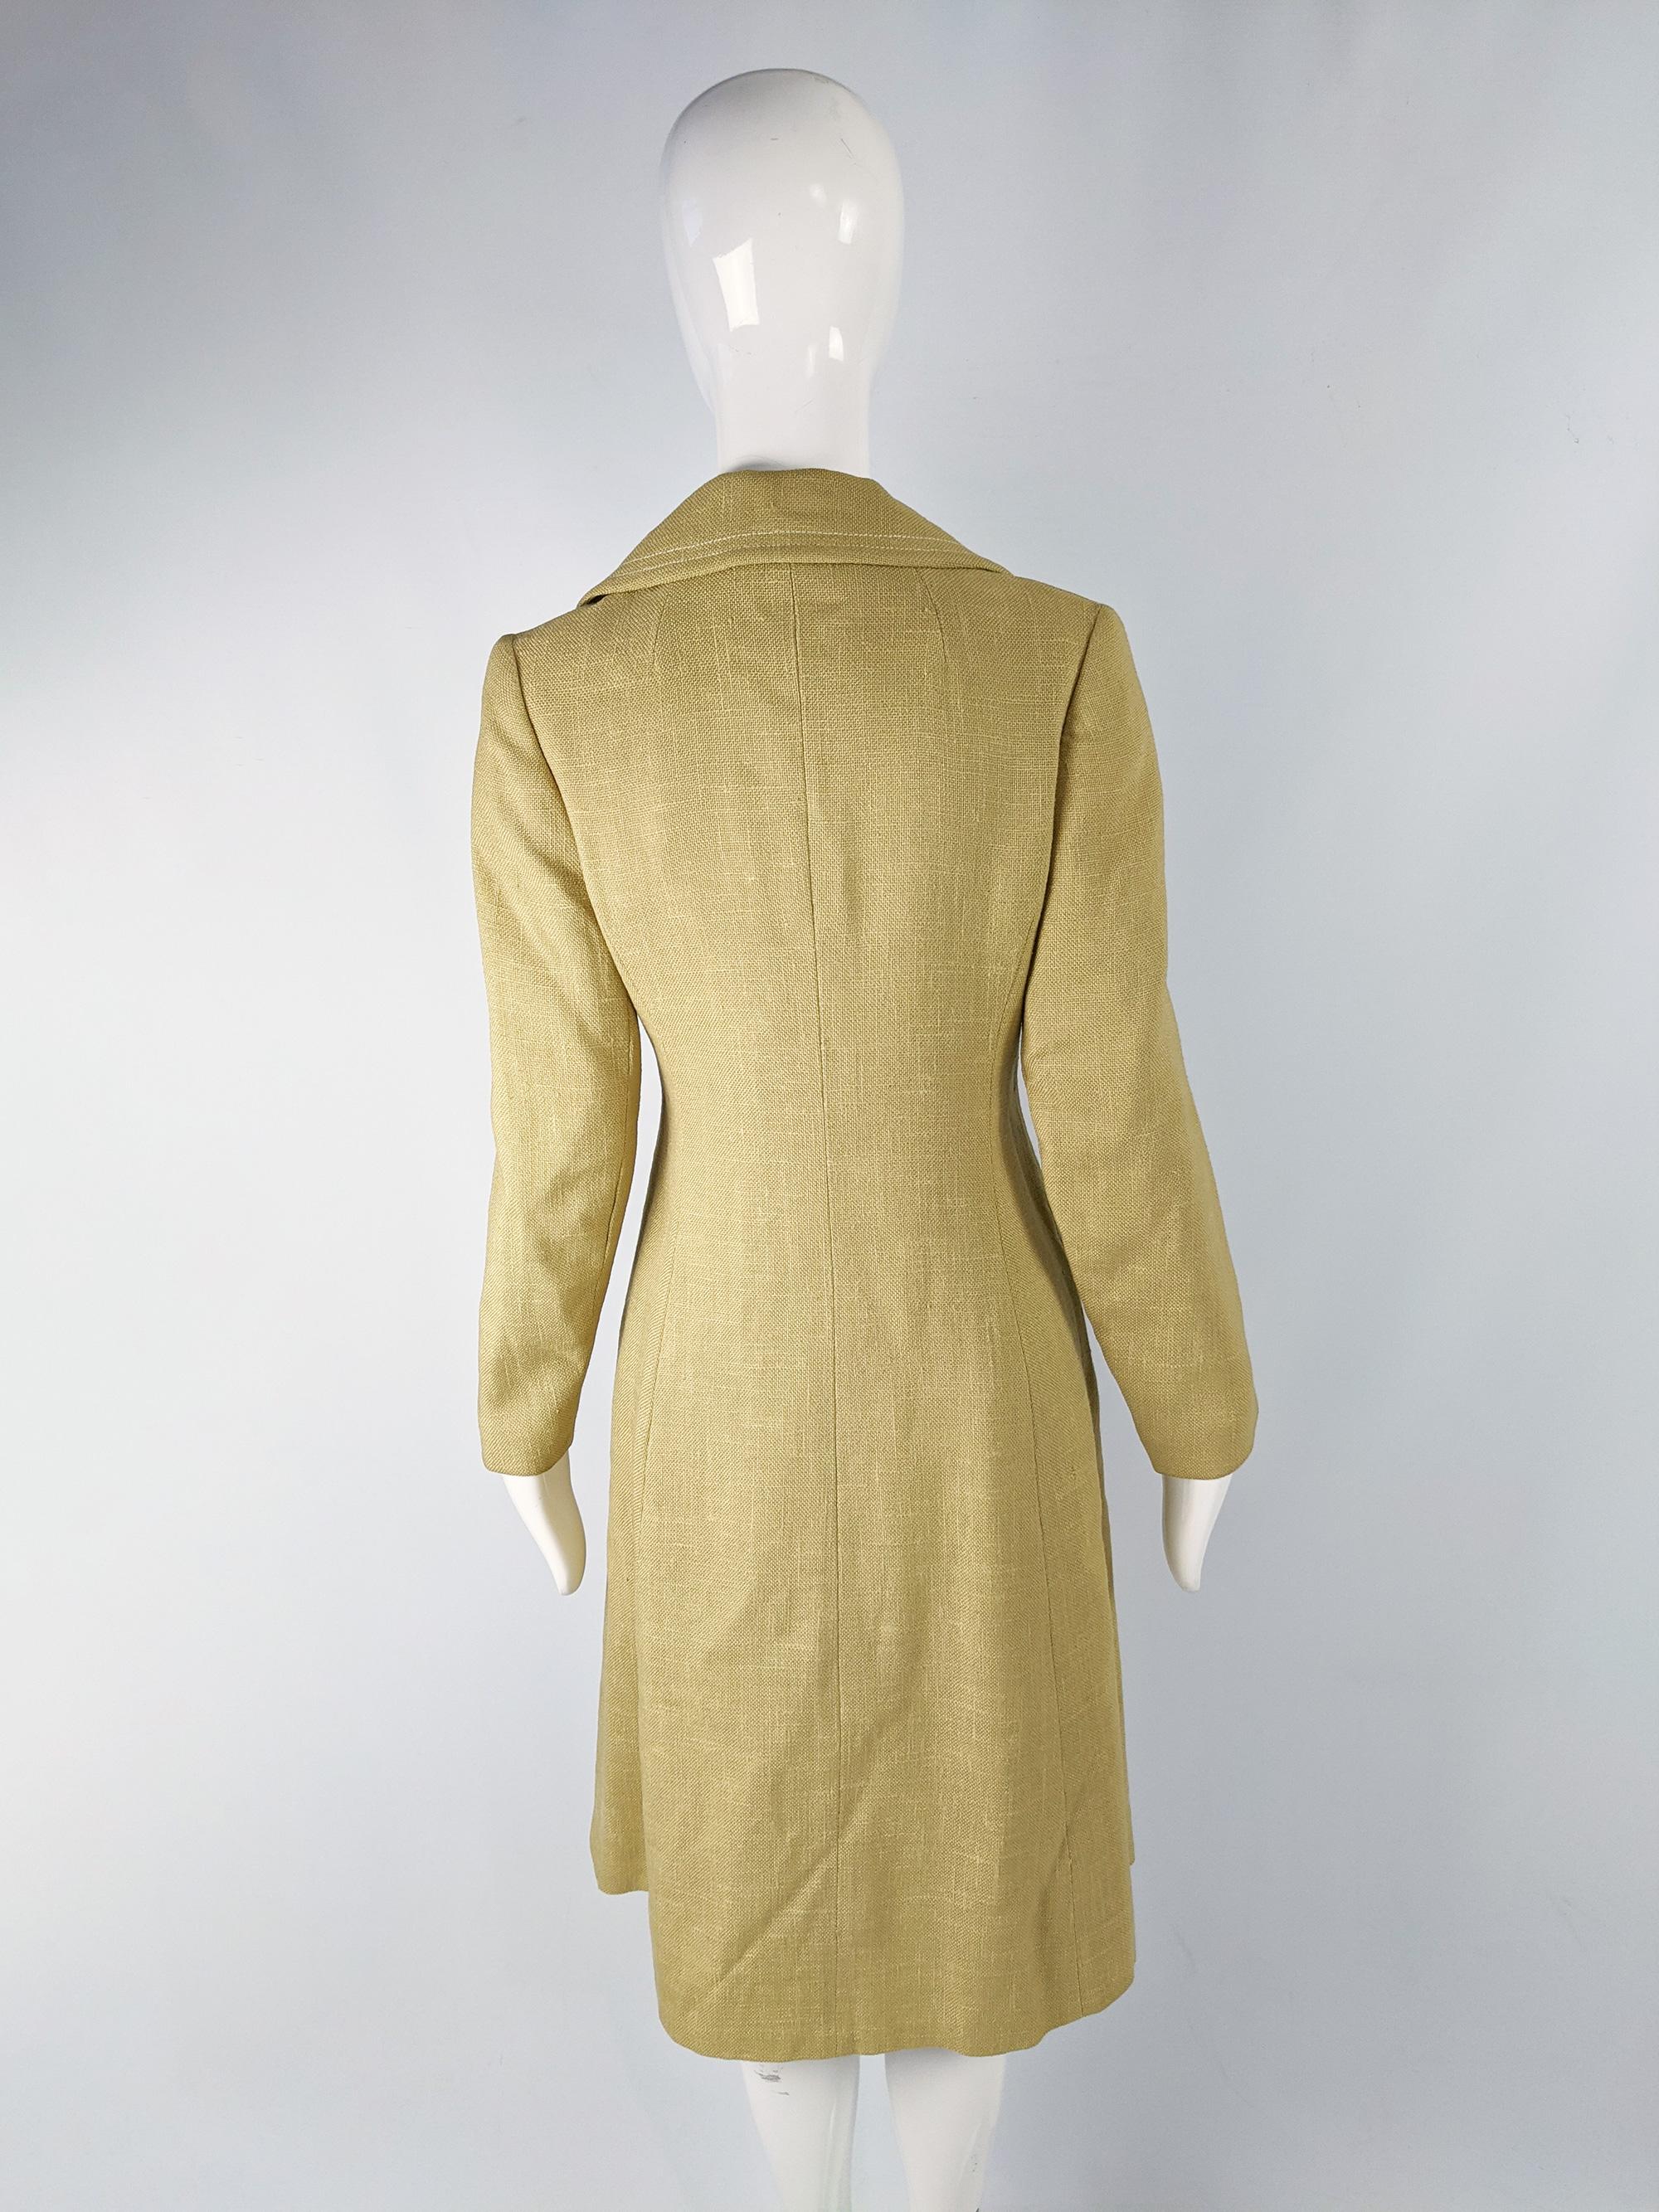 Women's Vintage 1960s Yellow Linen Mod Coat For Sale